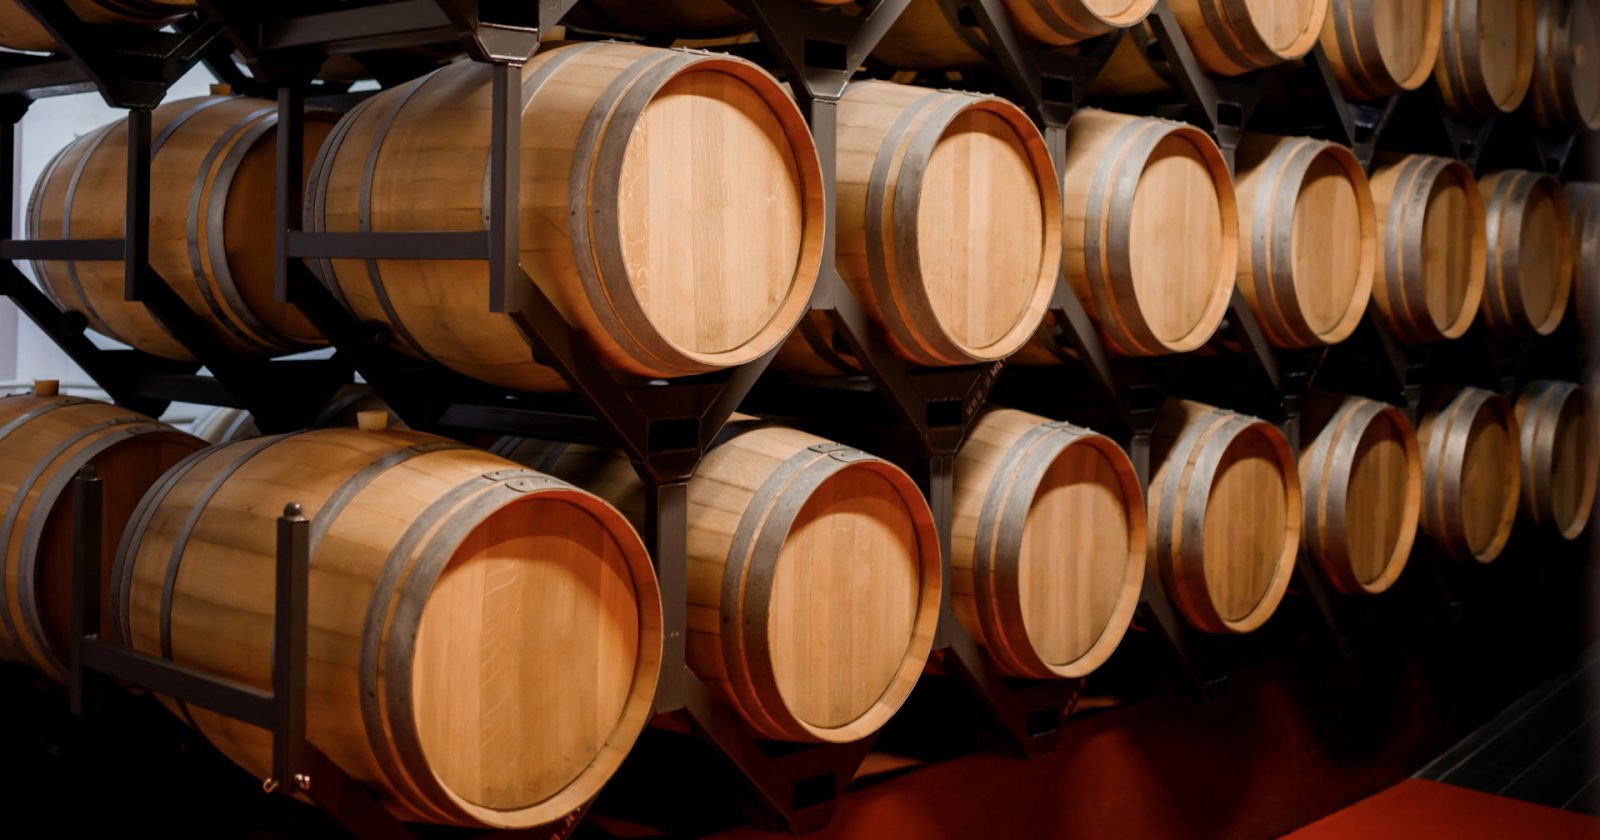 รัฐบาลฝรั่งเศสทุ่มเงิน 7,500 ล้านบาท เทไวน์ทิ้ง 300 ล้านลิตร แก้ปัญหาสินค้าล้นตลาด